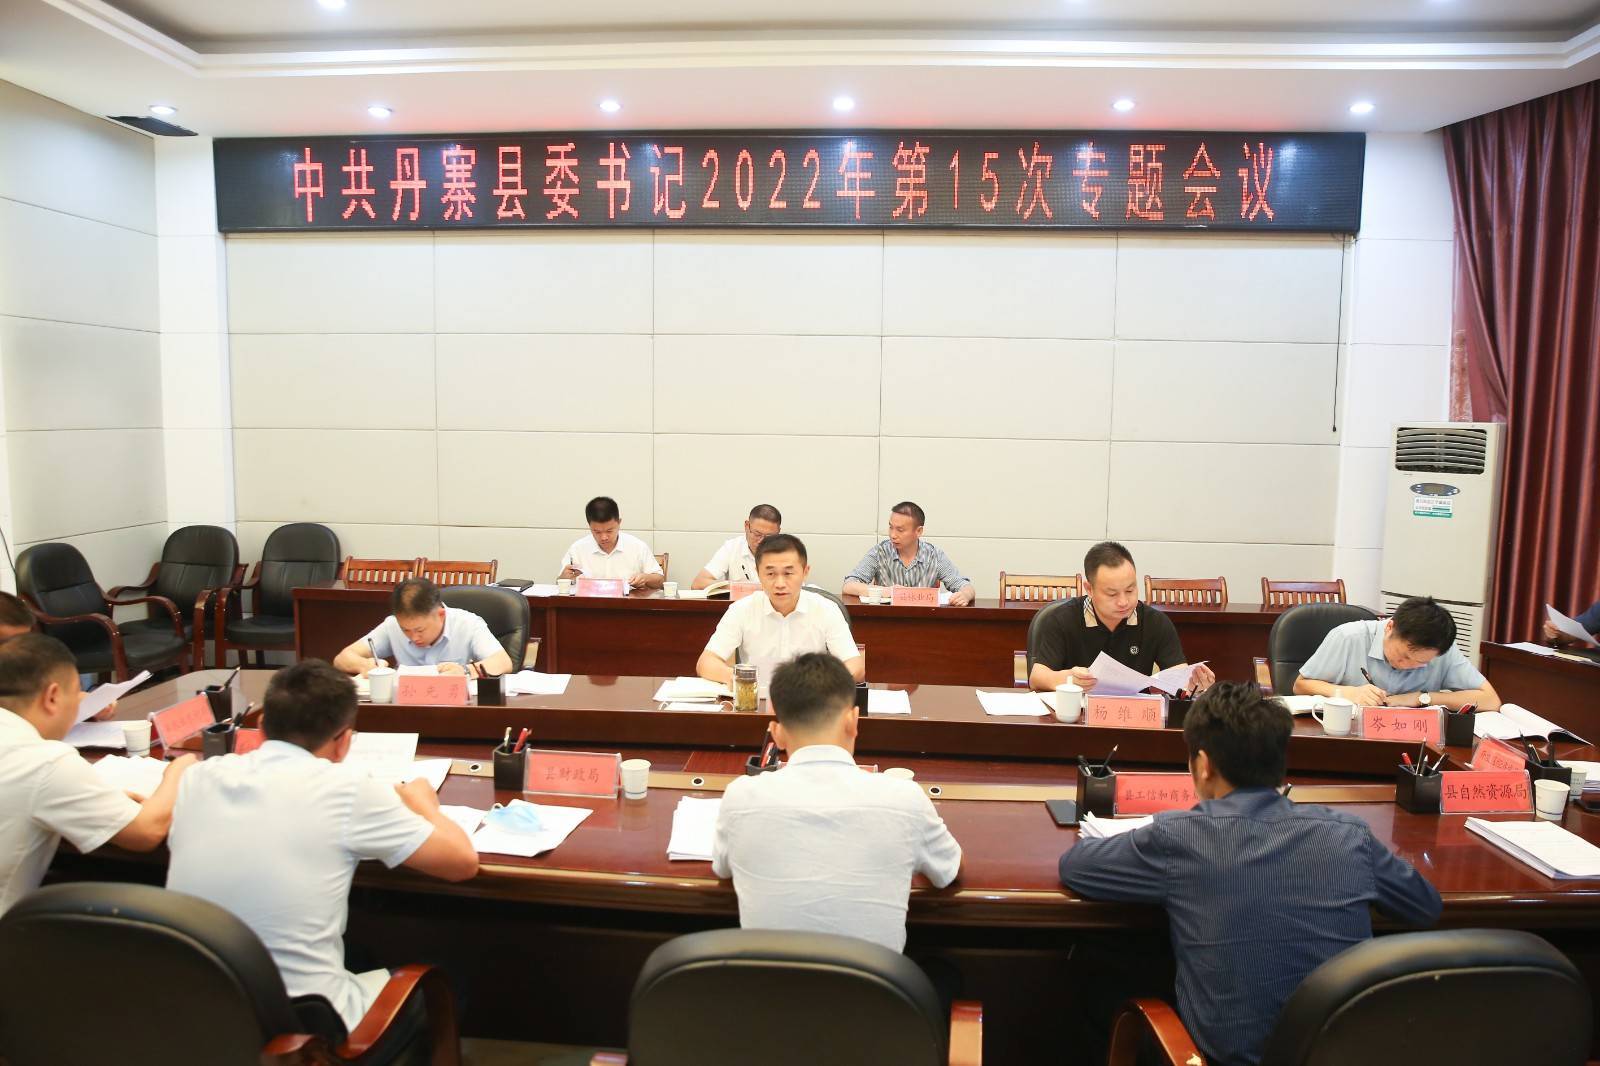 8月31日,丹寨县委书记龙滨主持召开2022年第15次书记专题会议,听取